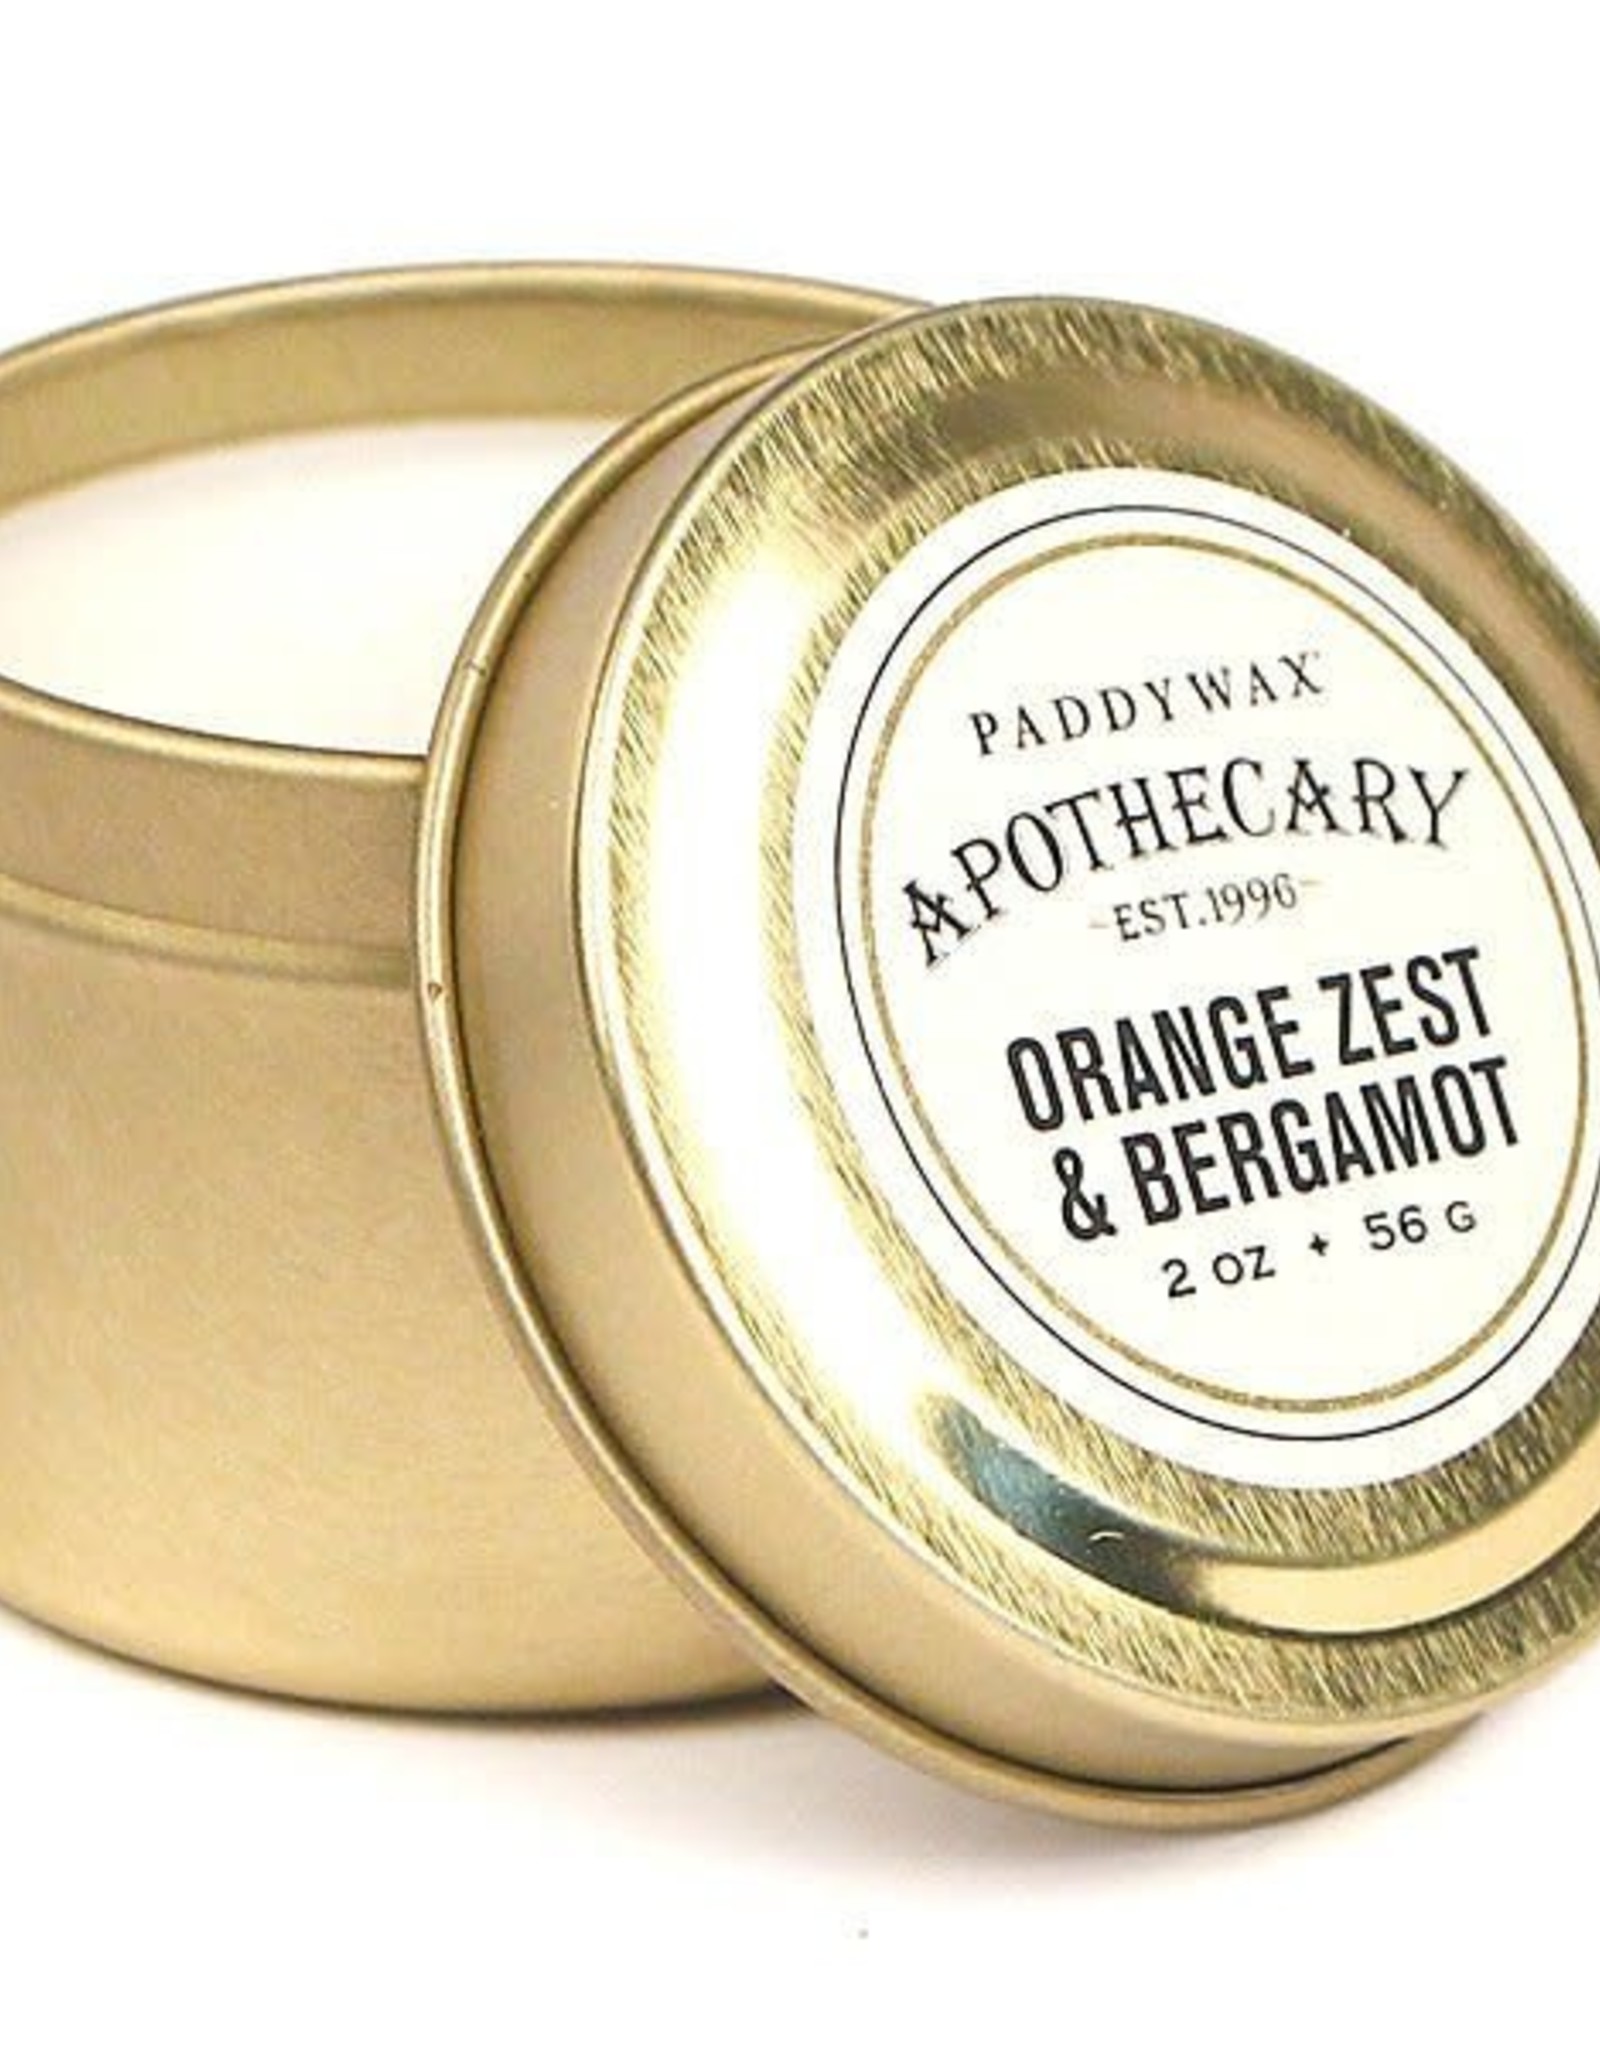 Paddywax Apothecary - Orange Zest & Bergamot Travel Tin Candle, 2oz.